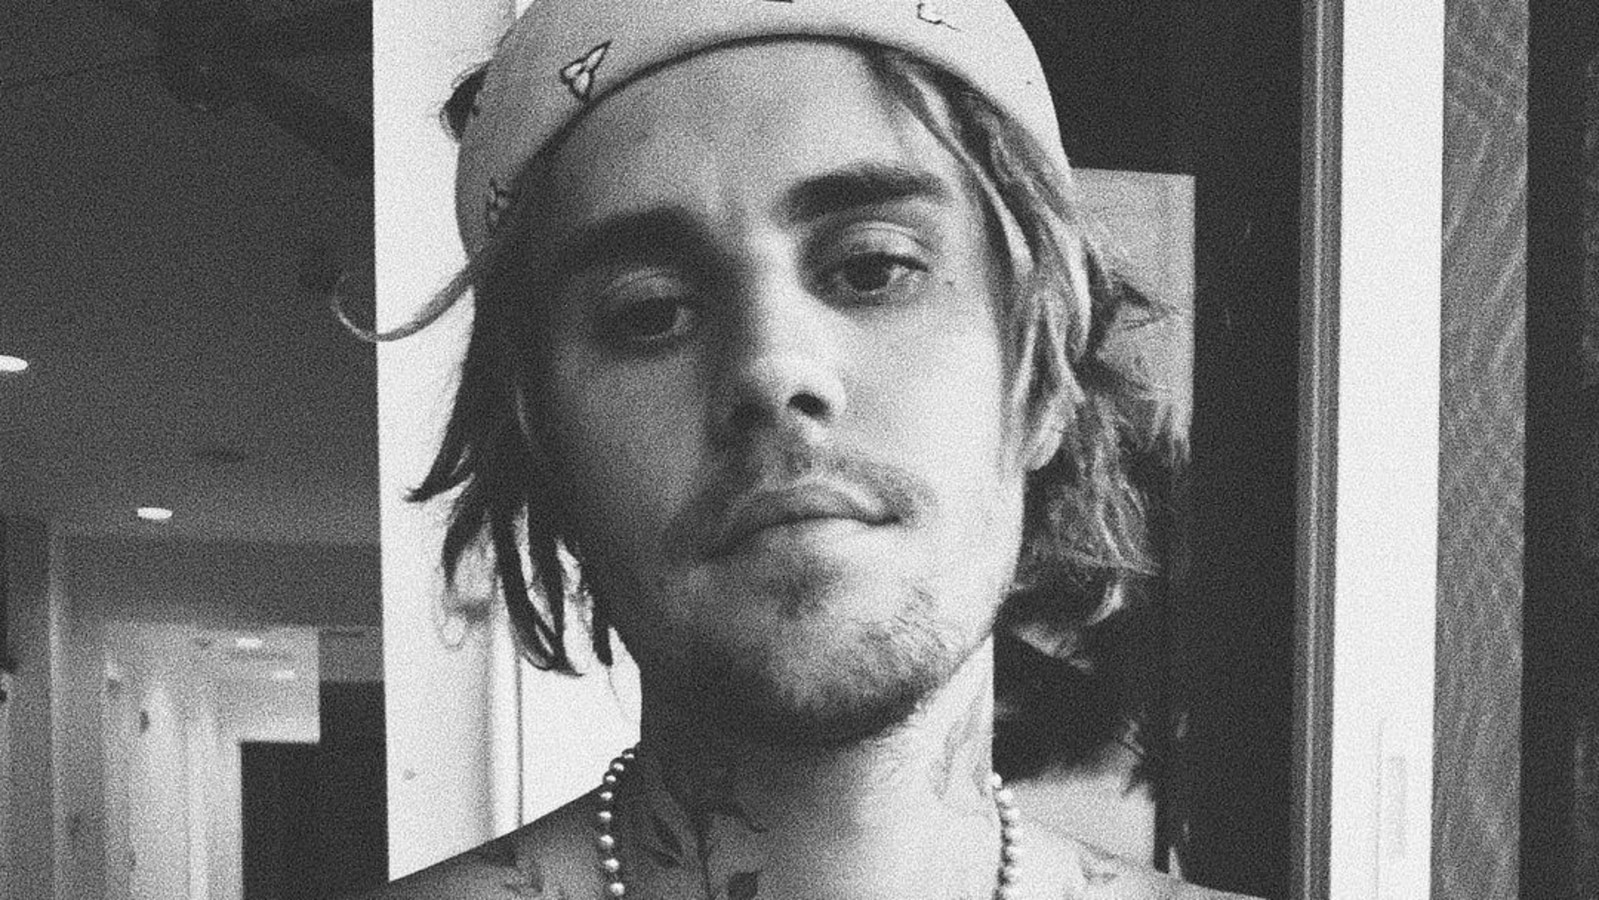 Justin Bieber sparks cultural appropriation debate over new dreadlocks